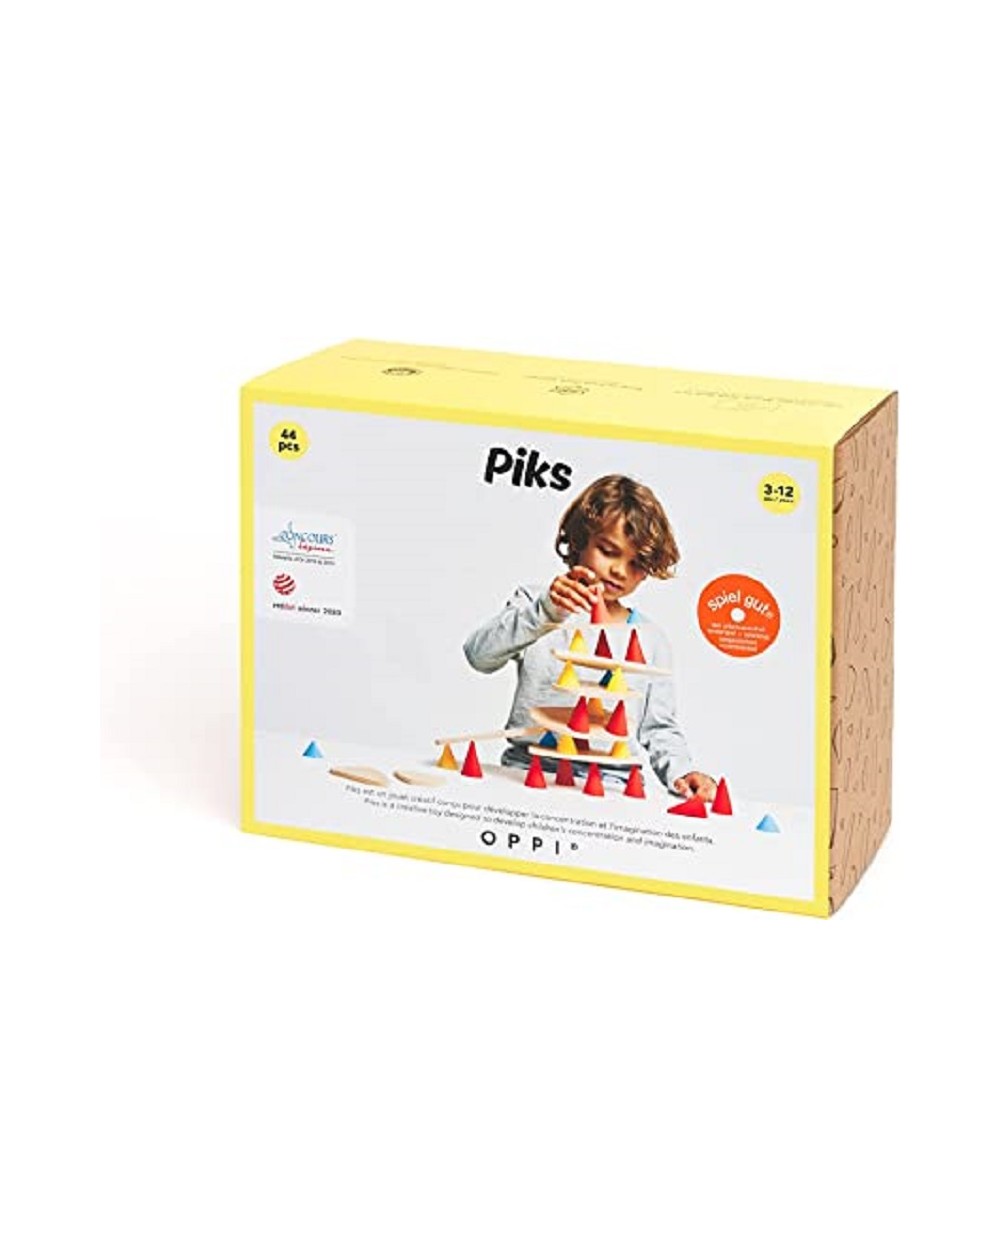 Oppi - Piks Small Kit 44 pièces - jeu de construction